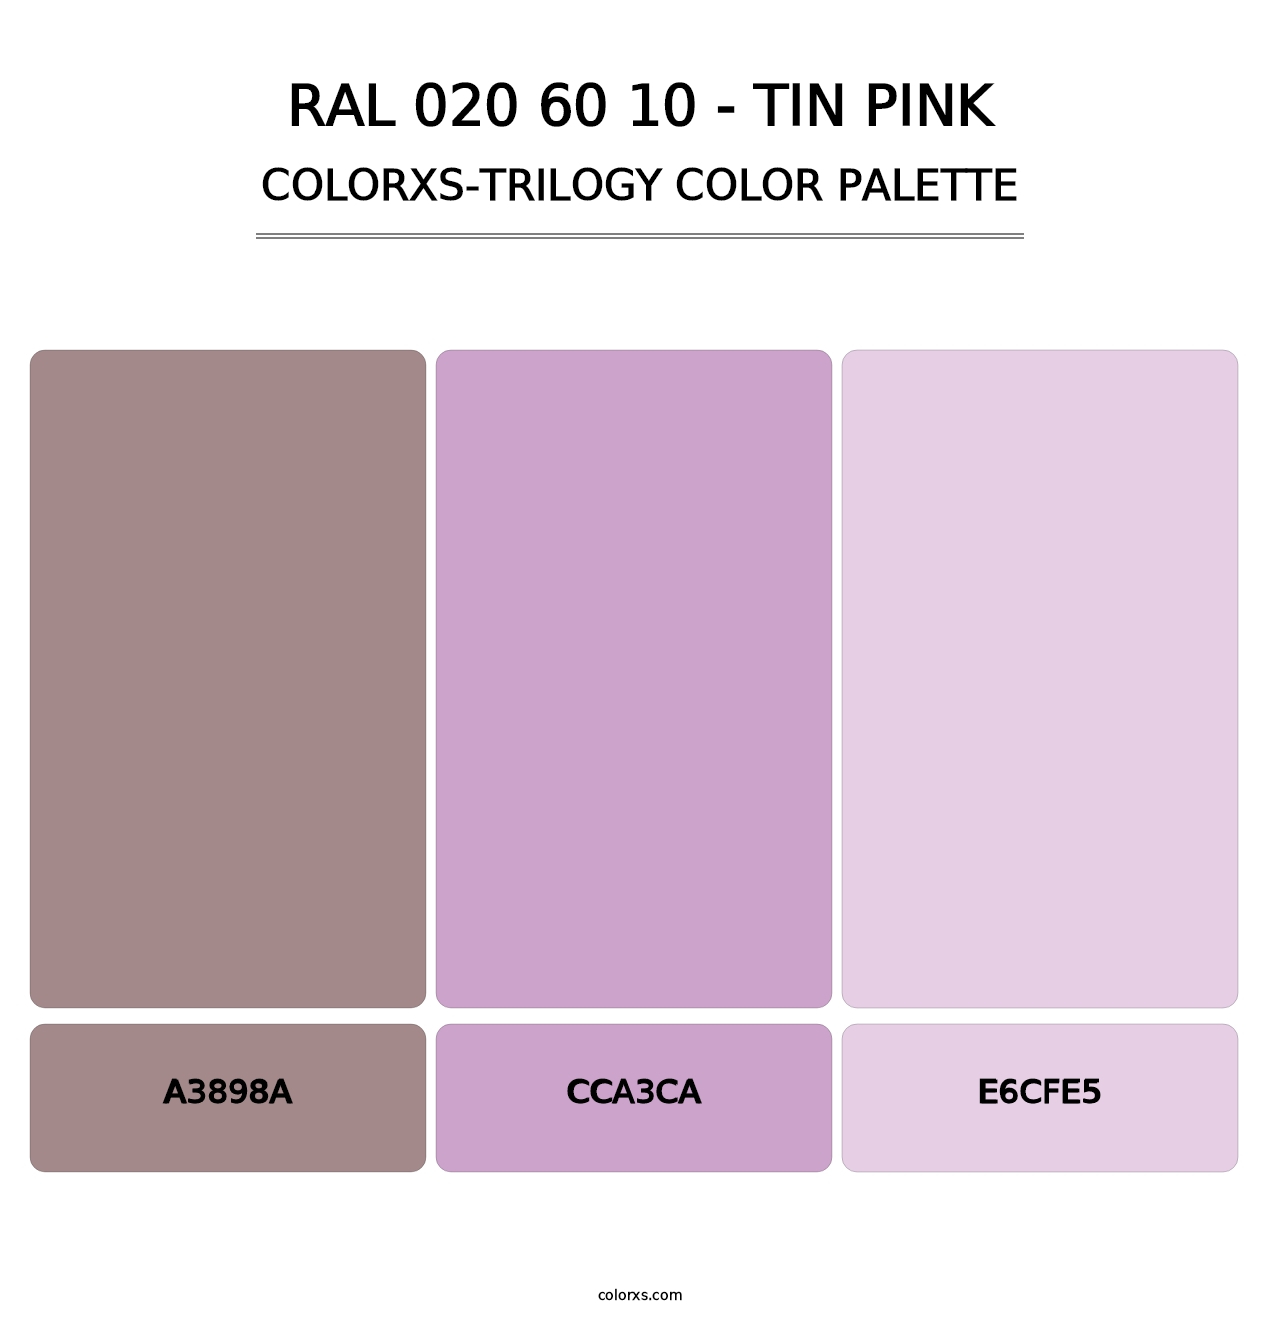 RAL 020 60 10 - Tin Pink - Colorxs Trilogy Palette